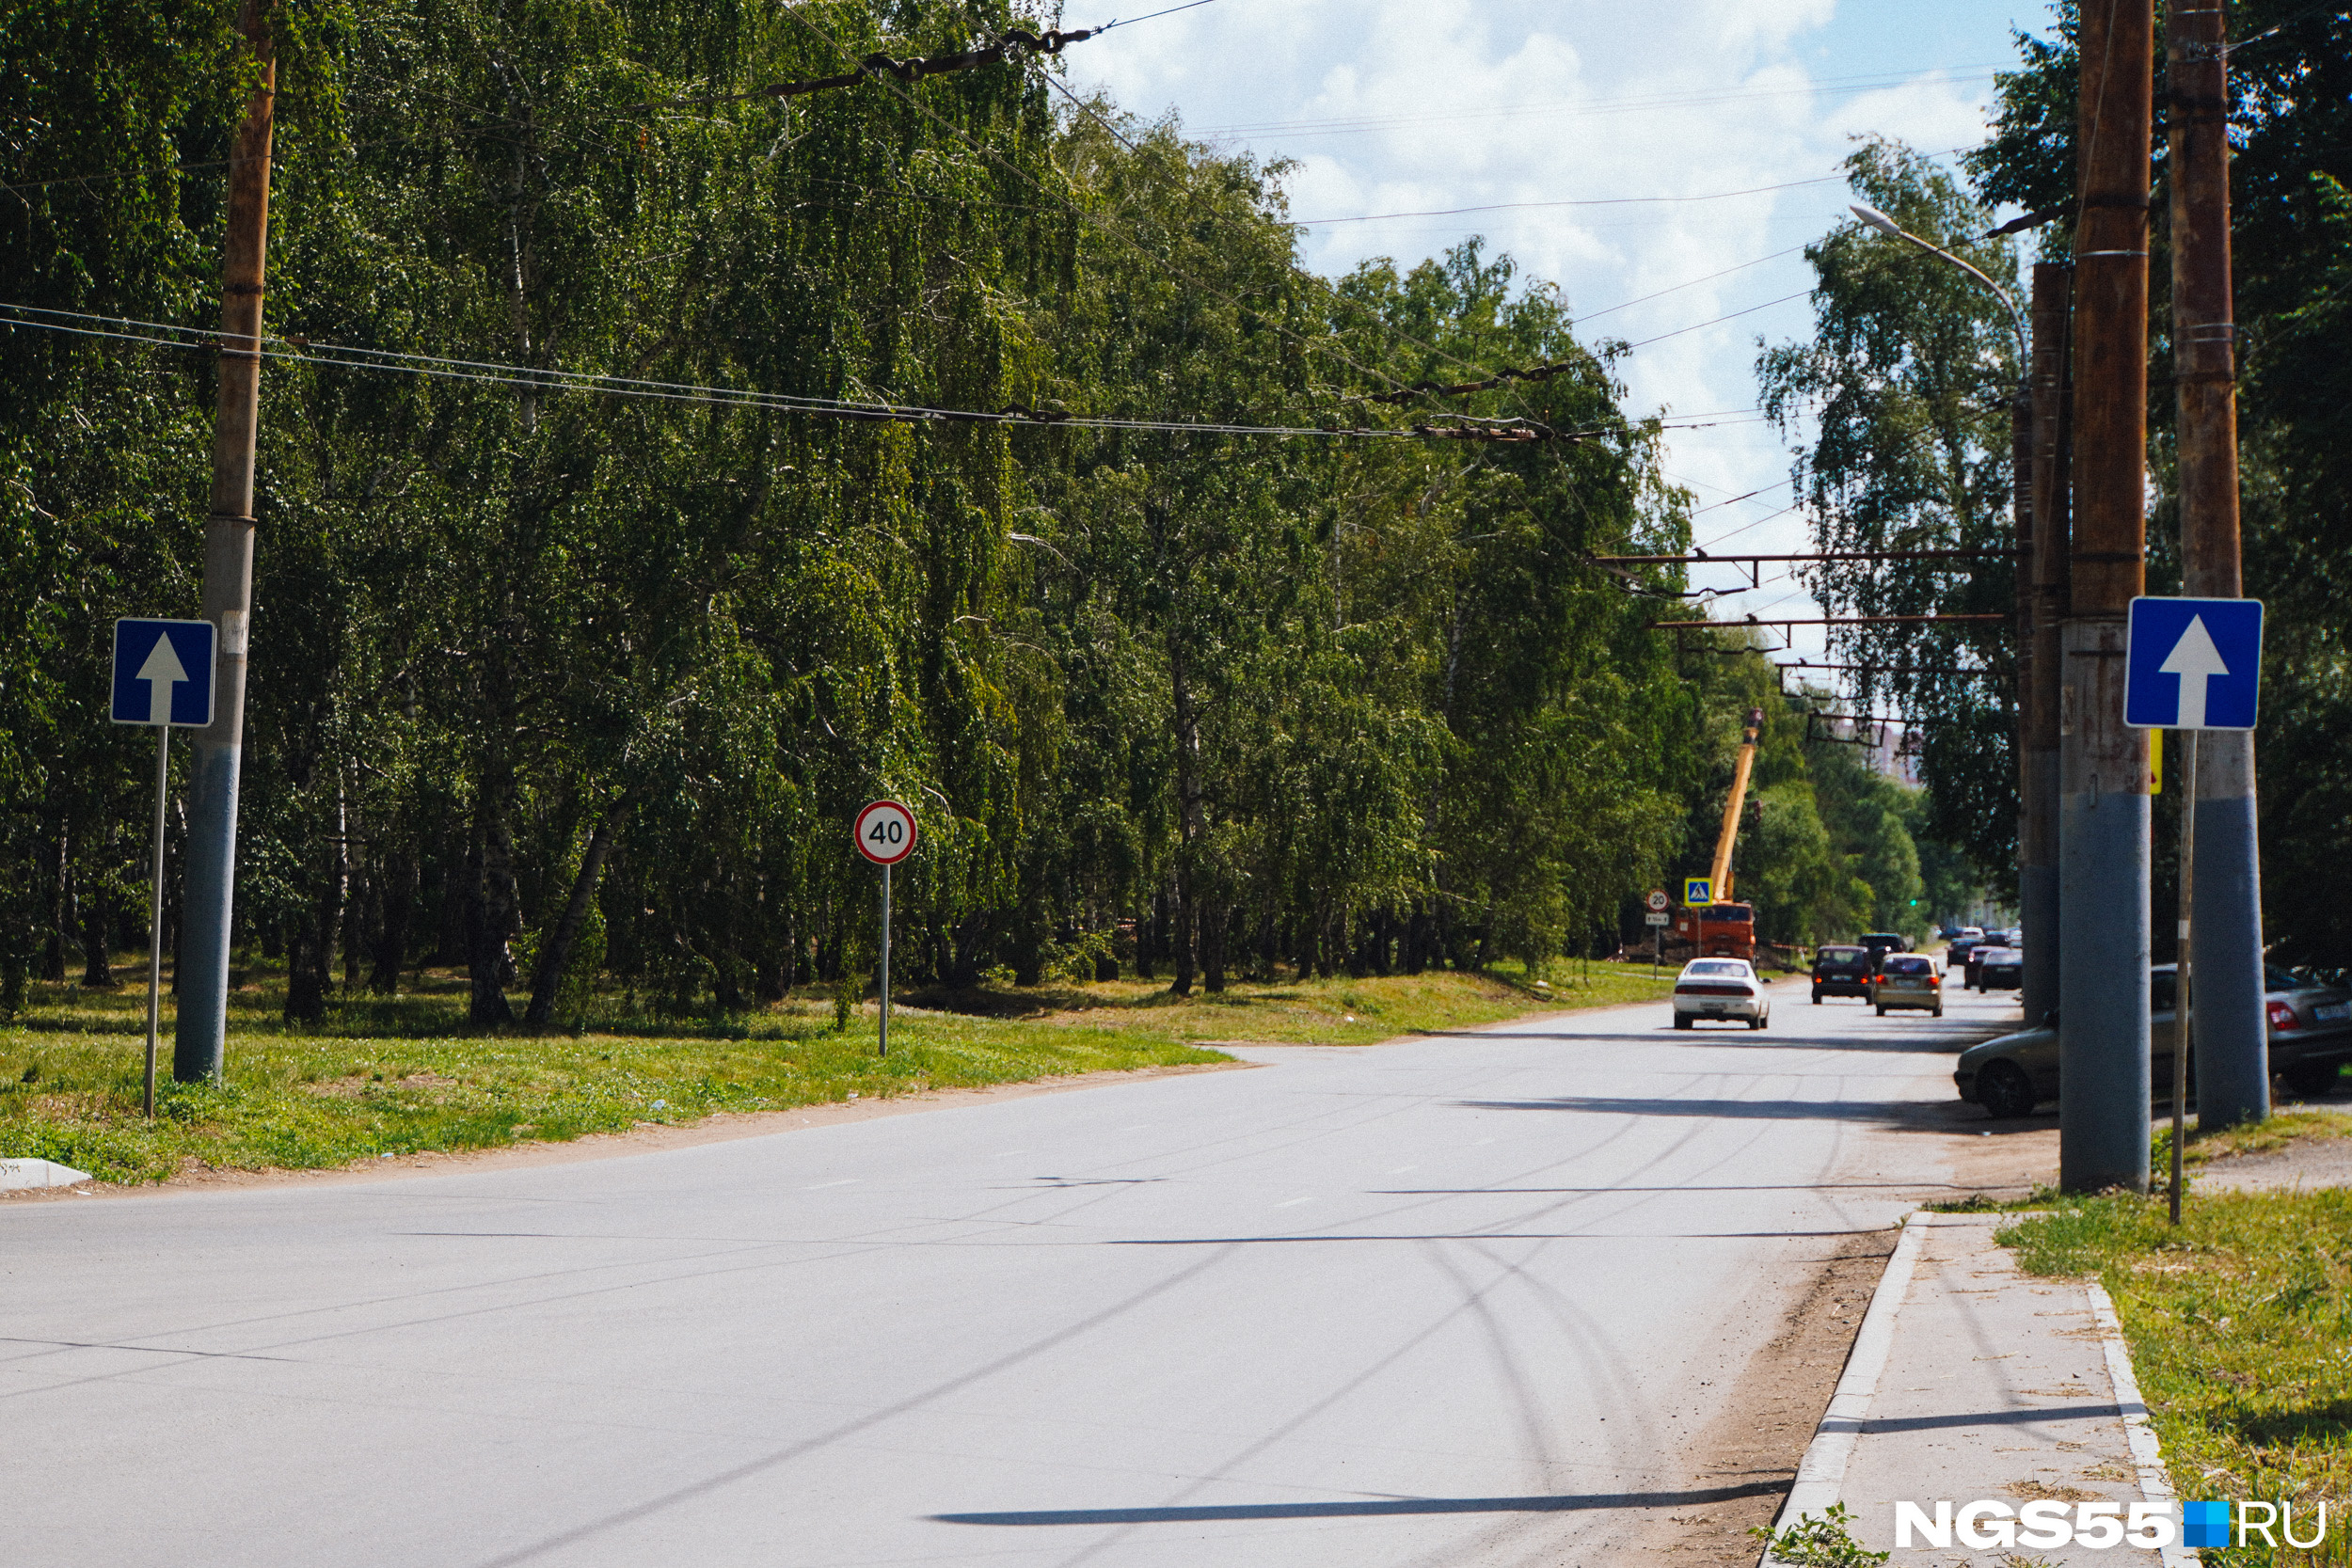 Улица имени Николая Федоровича Ватутина начинается от улицы Лукашевича. Разделительной линией между полос движения транспорта служит настоящий березовый лес